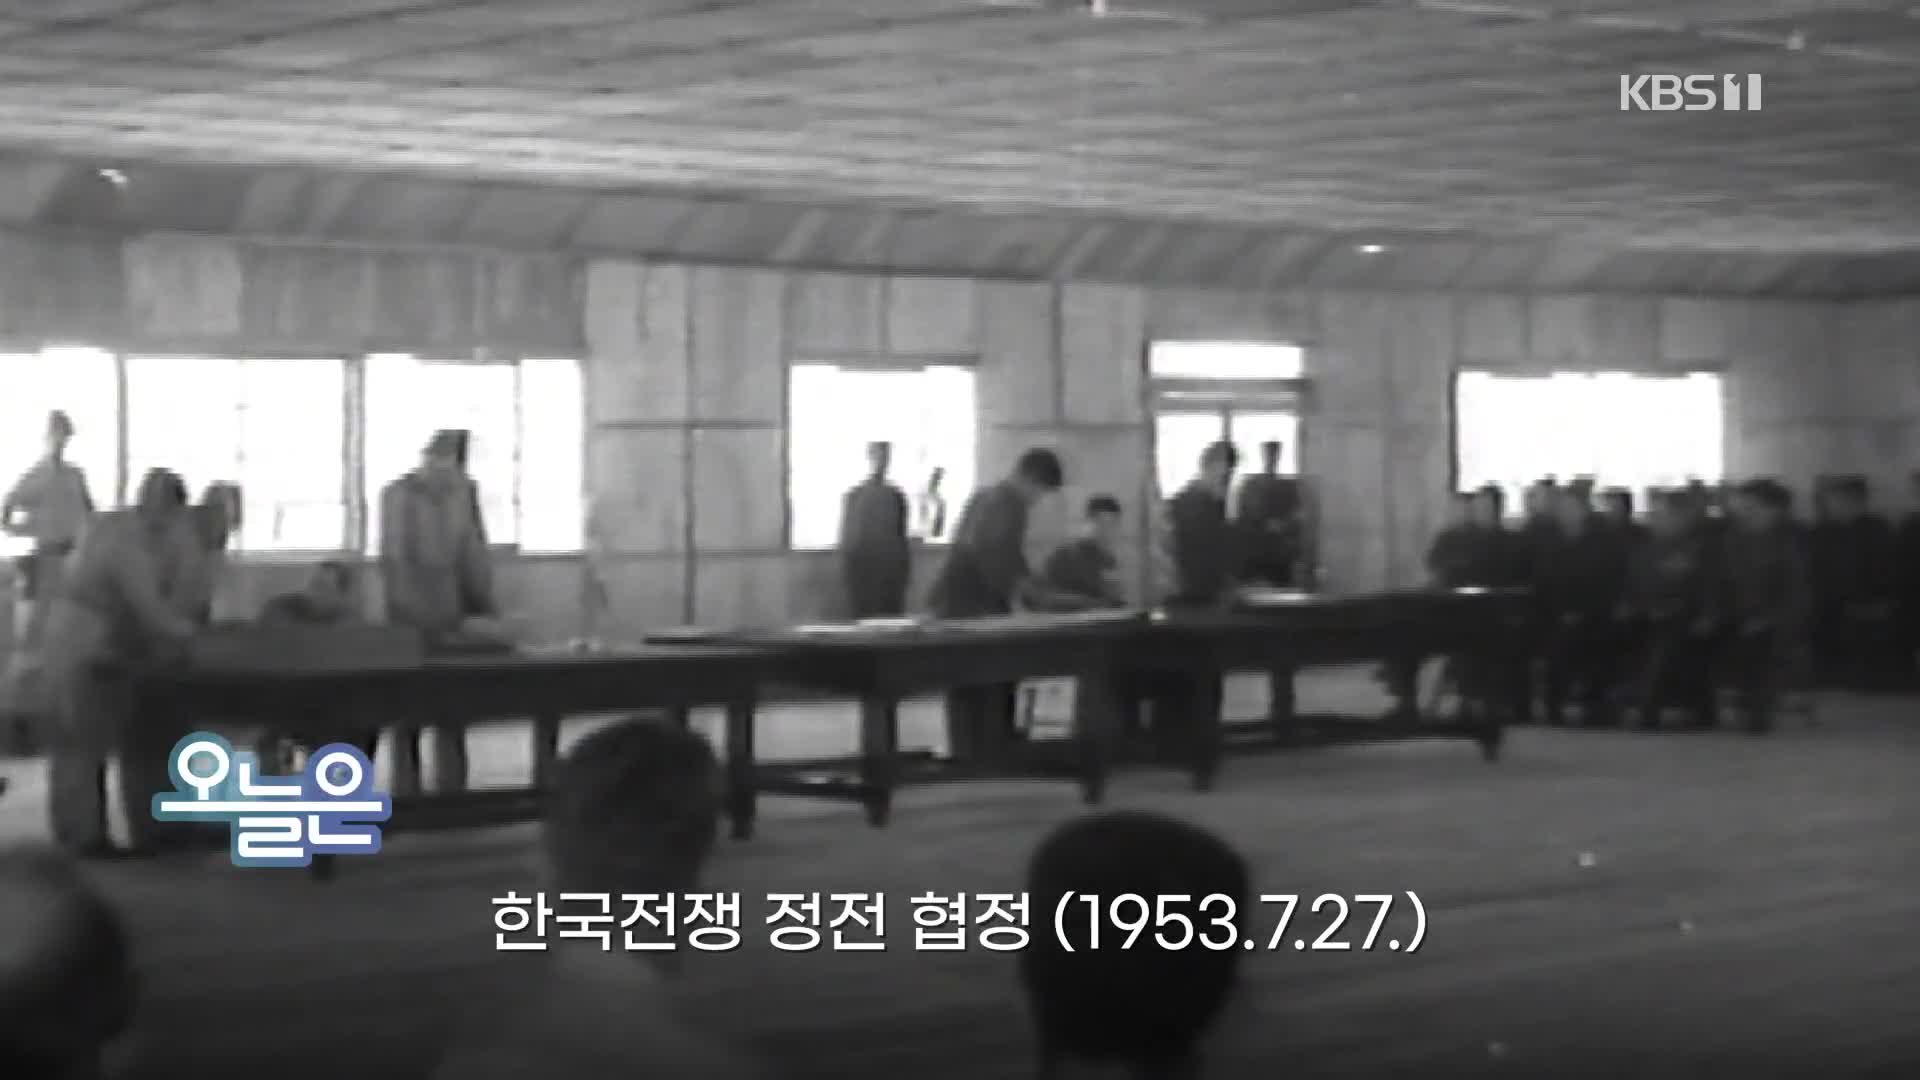 [오늘은] 한국전쟁 정전 협정 (1953.7.27.)